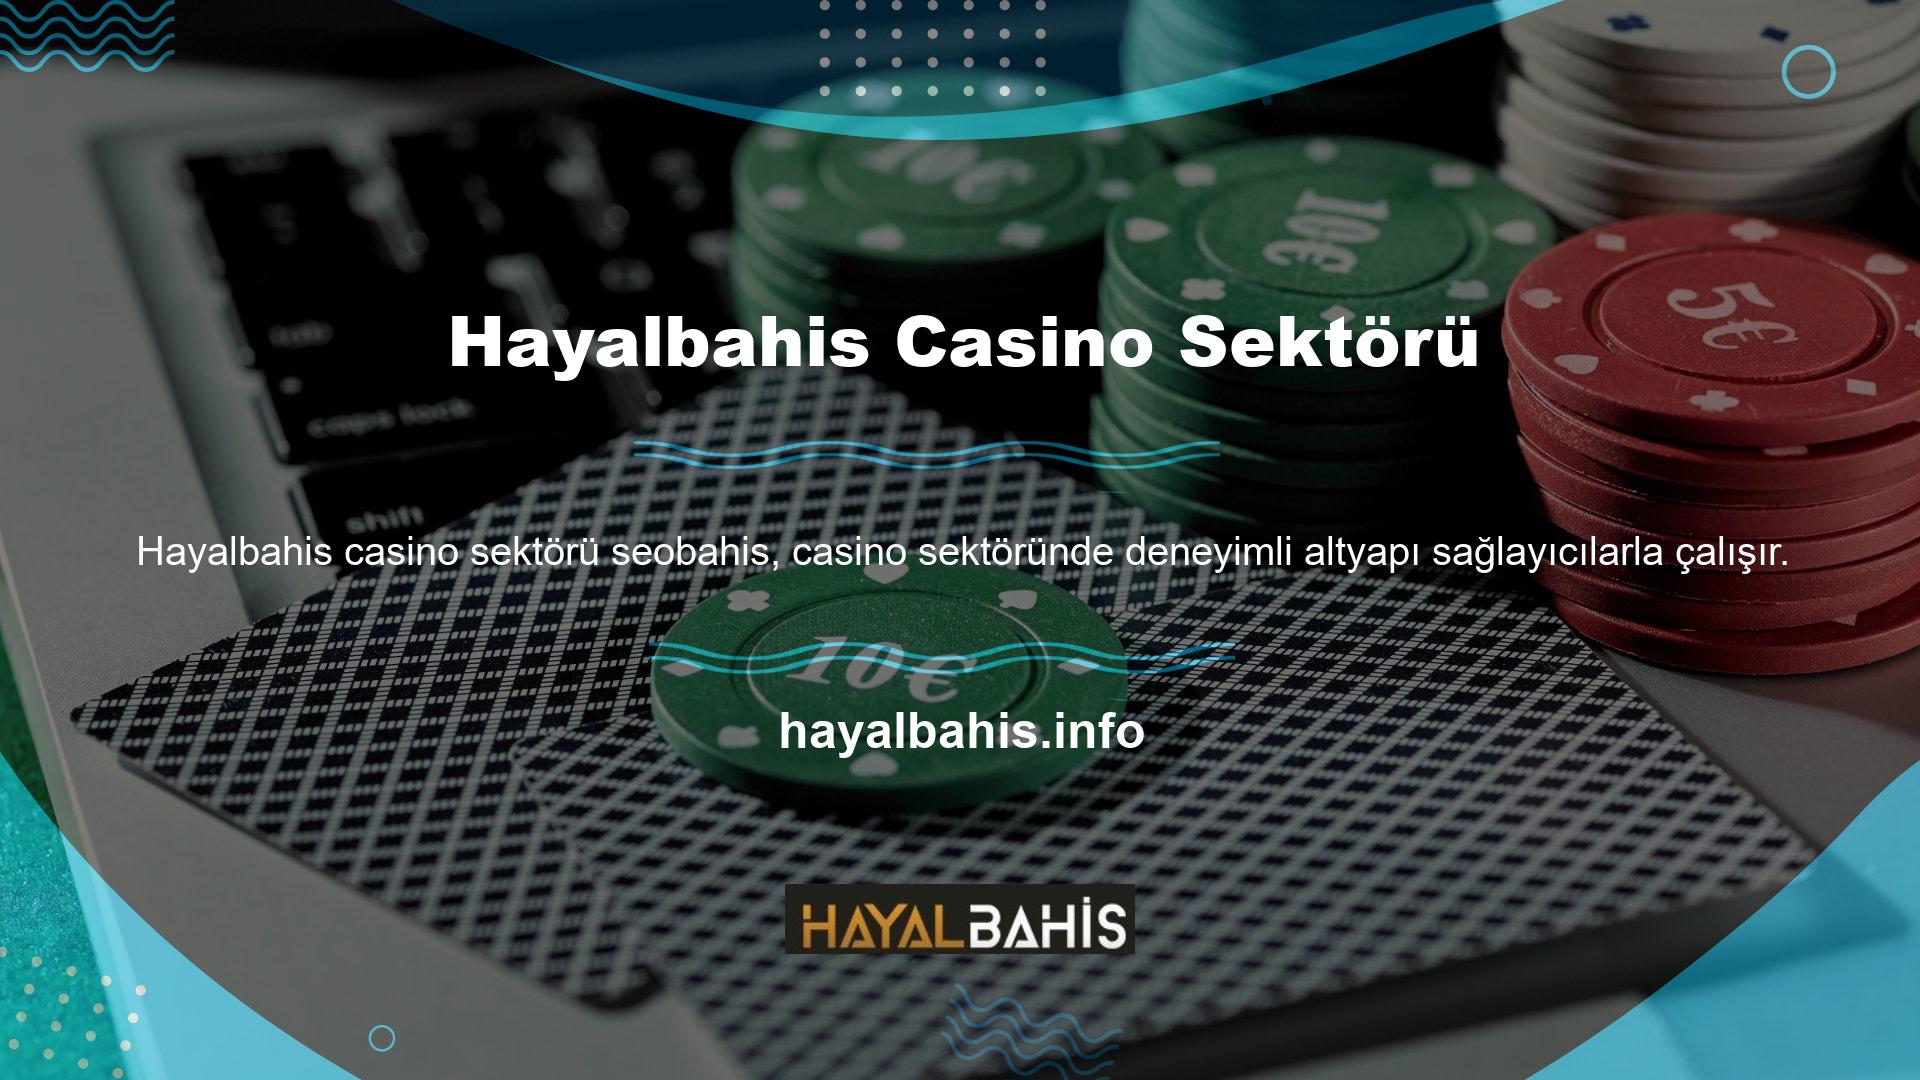 Altyapı sağlayıcıları casino oyunlarında çok önemlidir